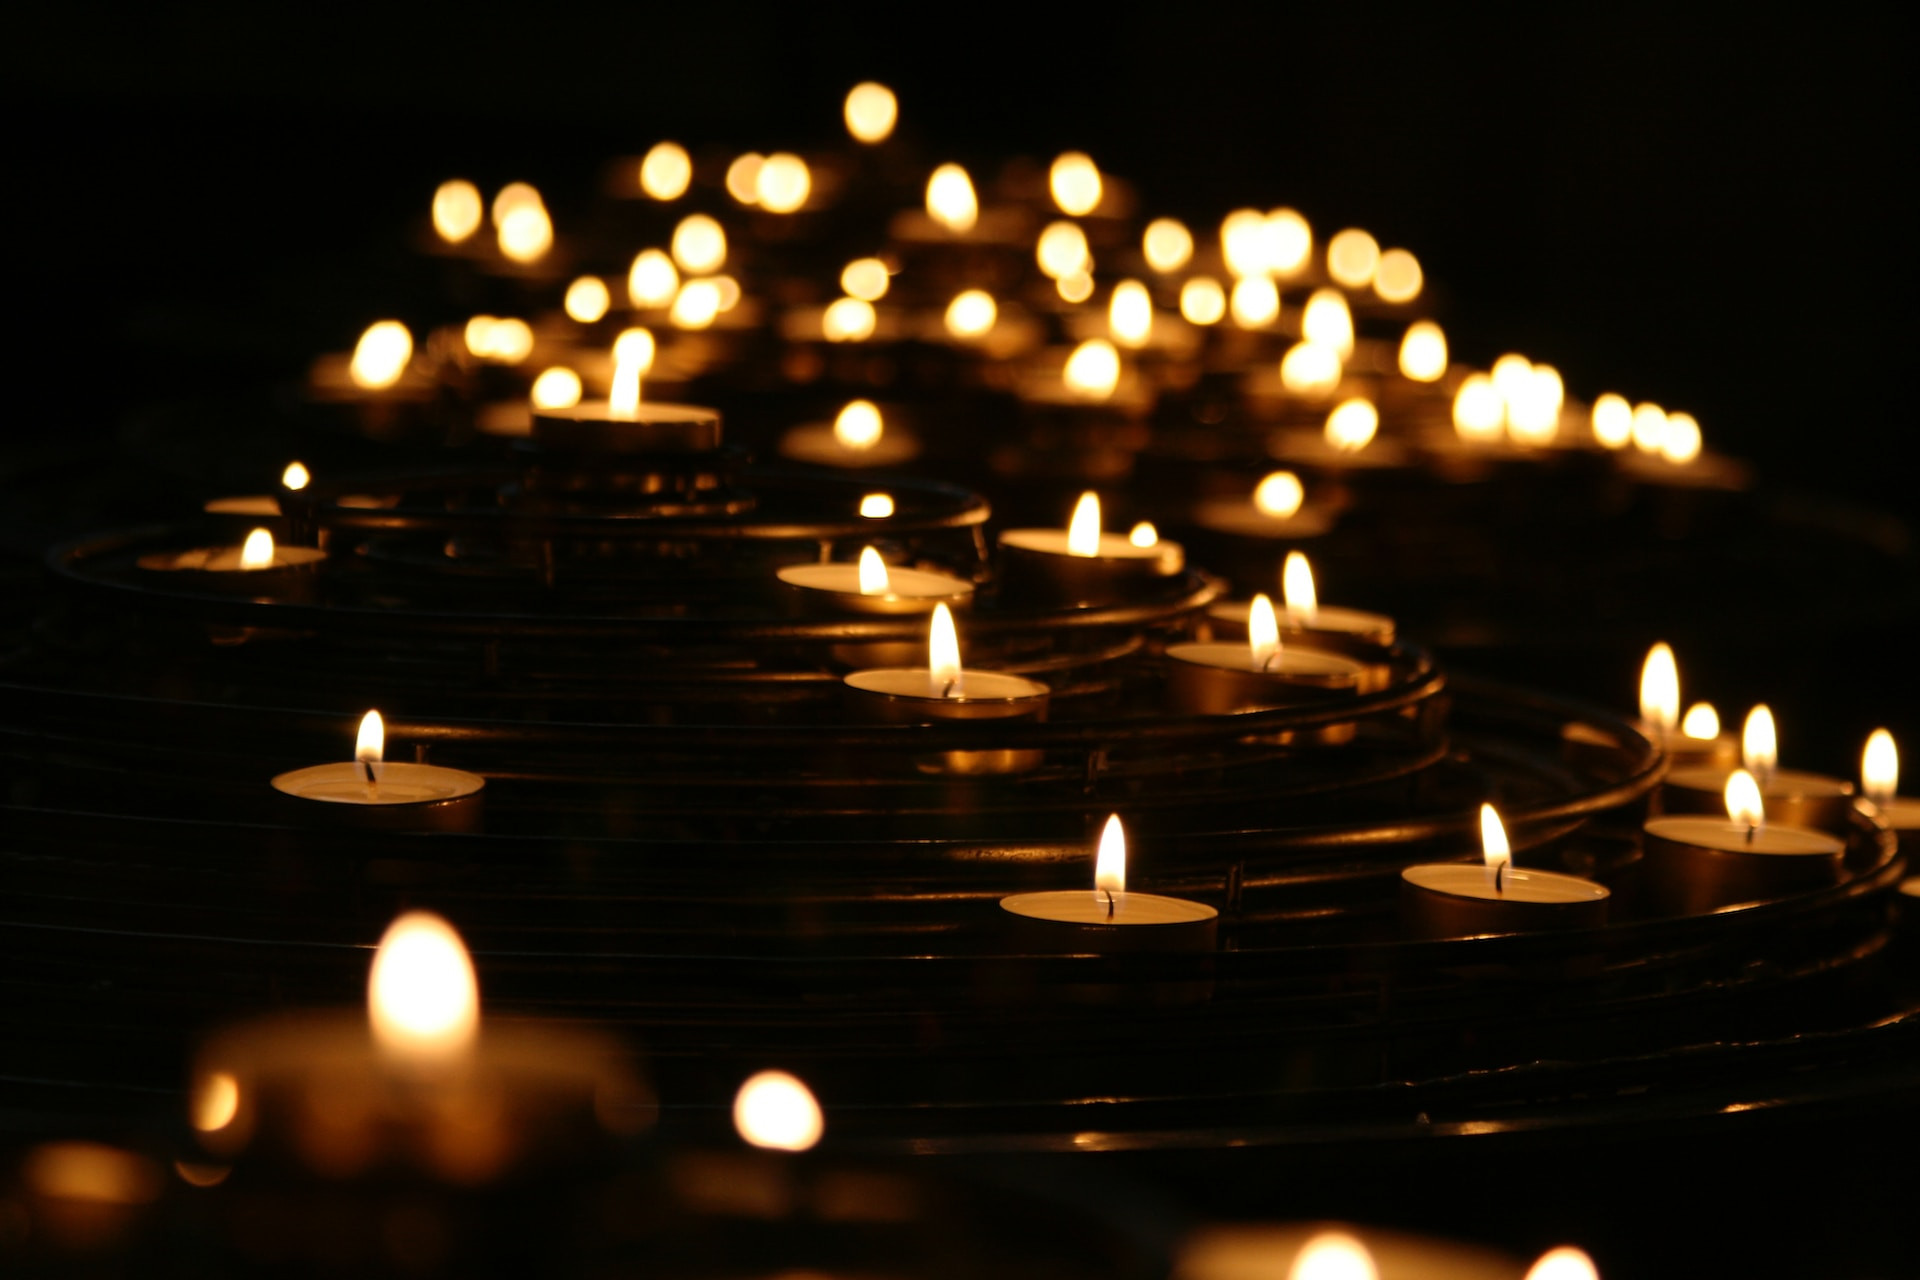 Taizejska molitev in svečke ... Nekaj, kar se te res dotakne ...